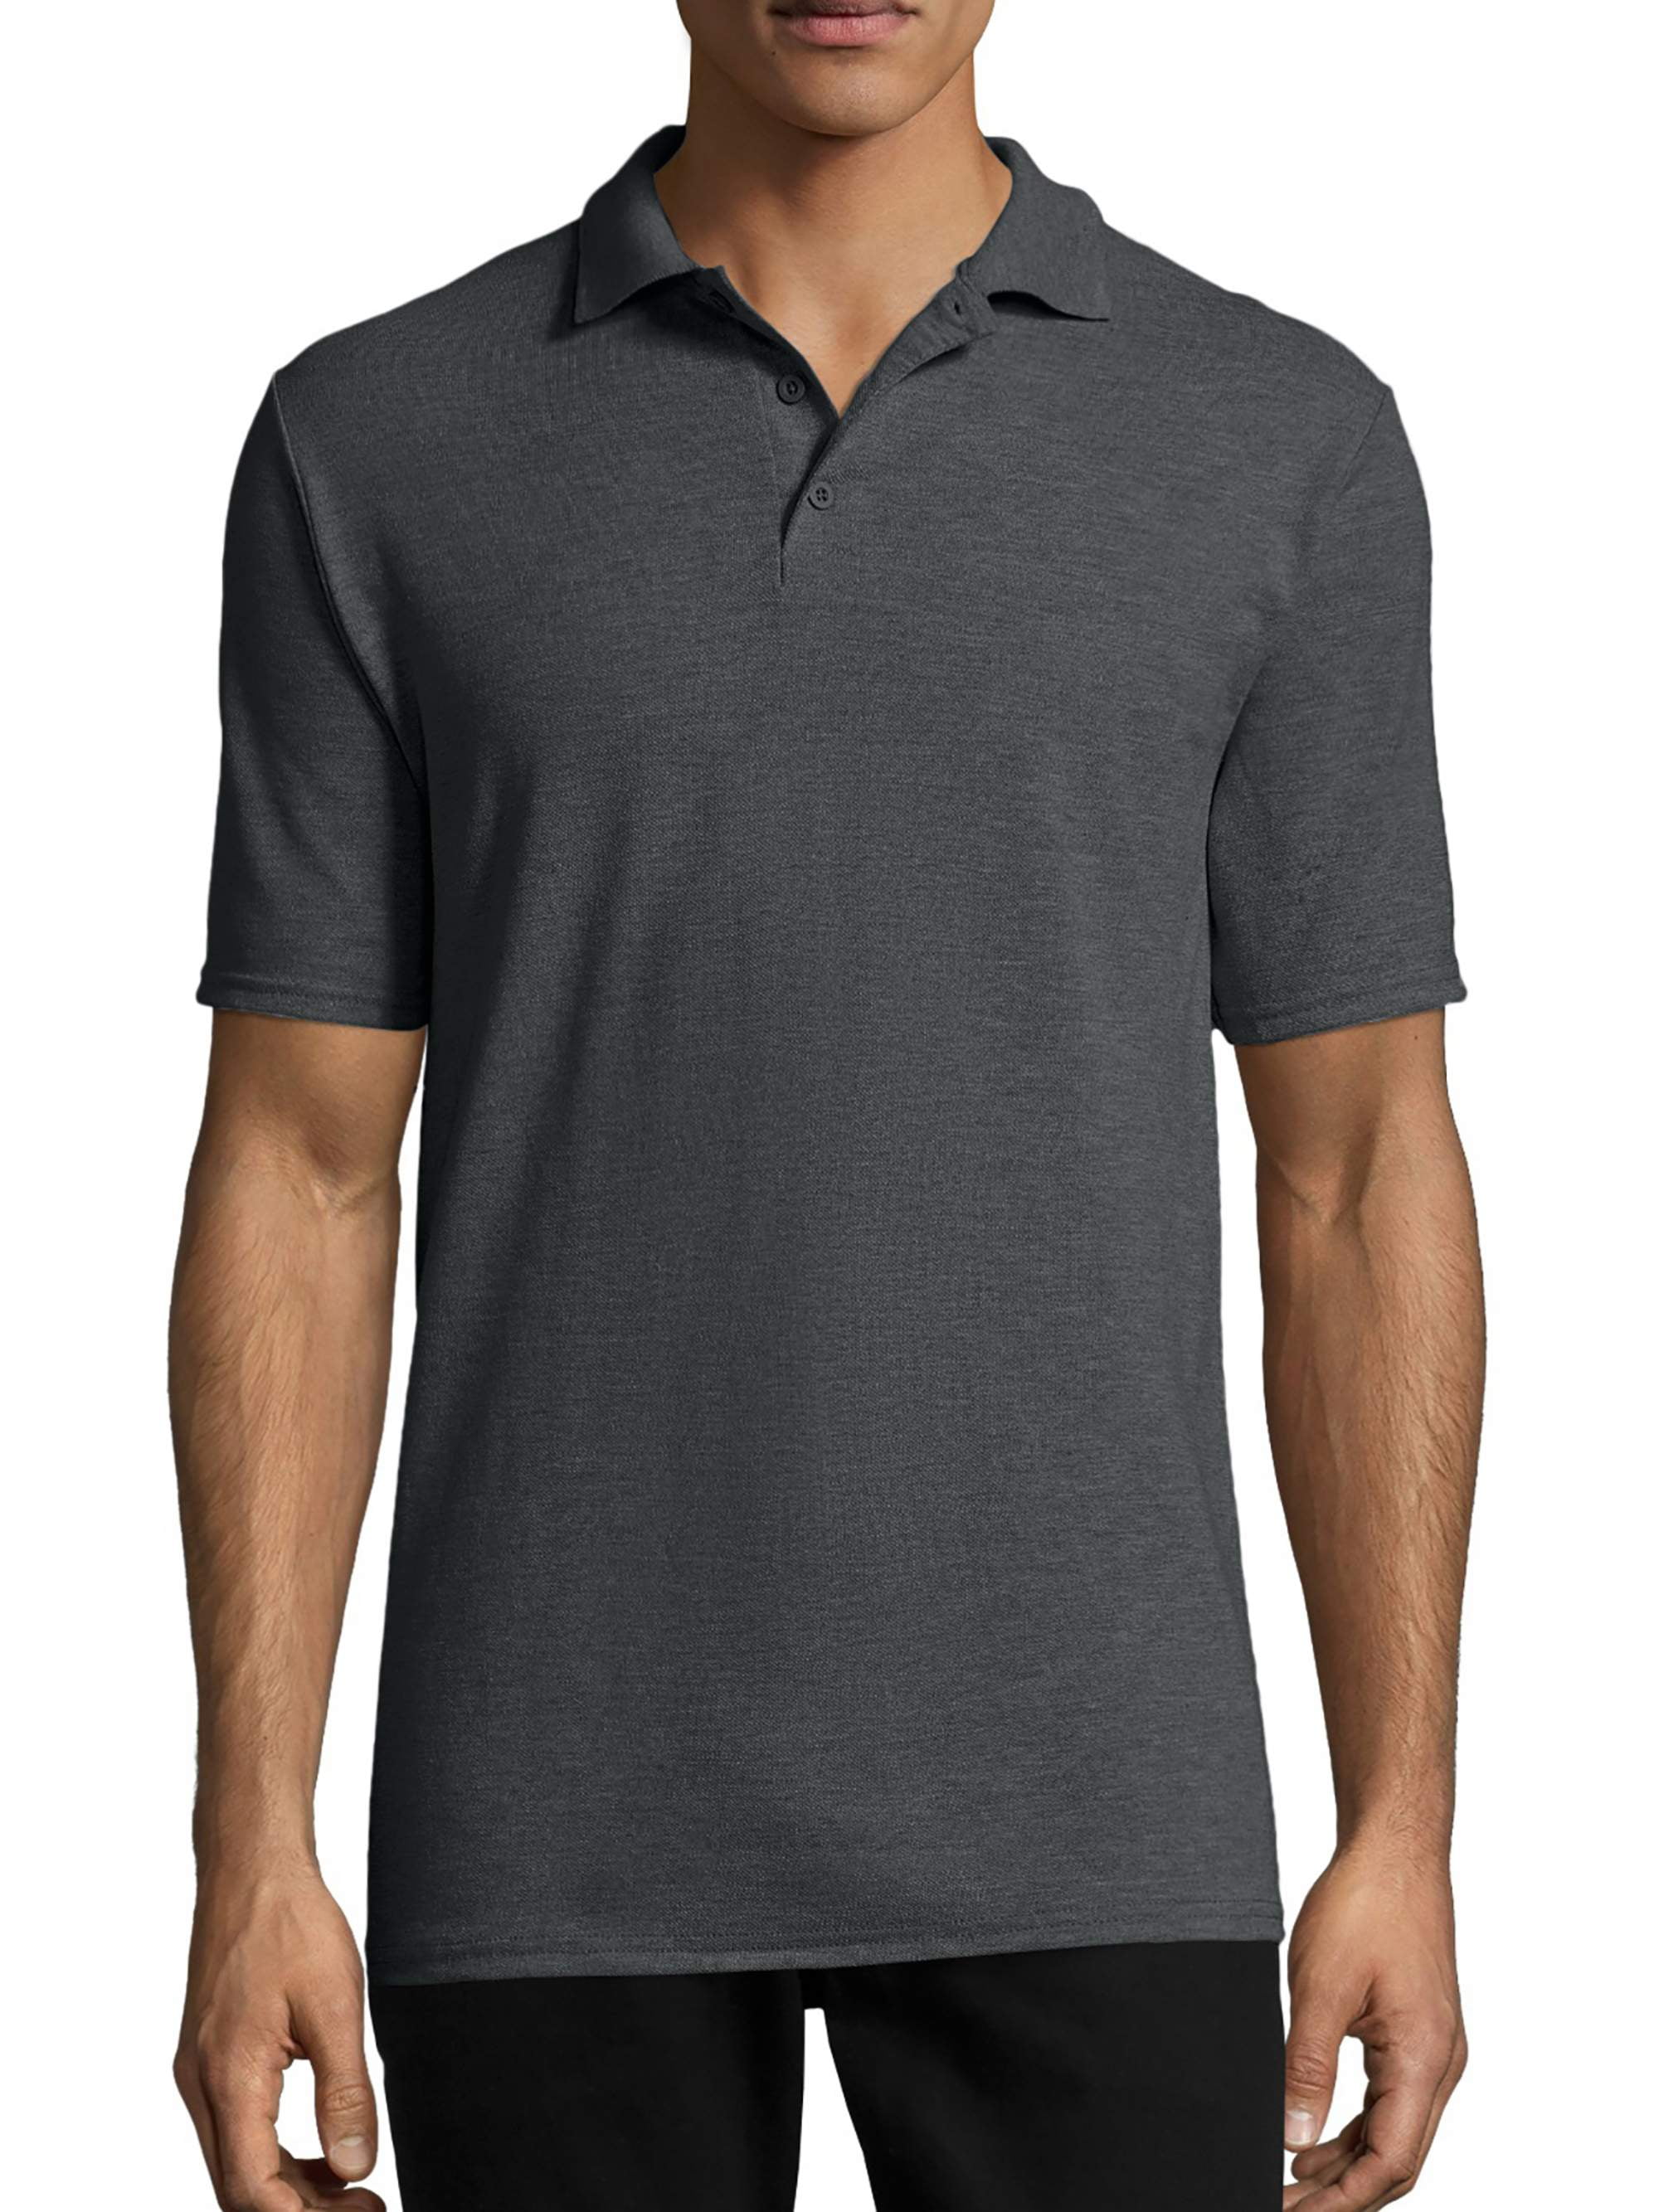 Hanes Men's X-Temp Short Sleeve Pique Polo Shirt 